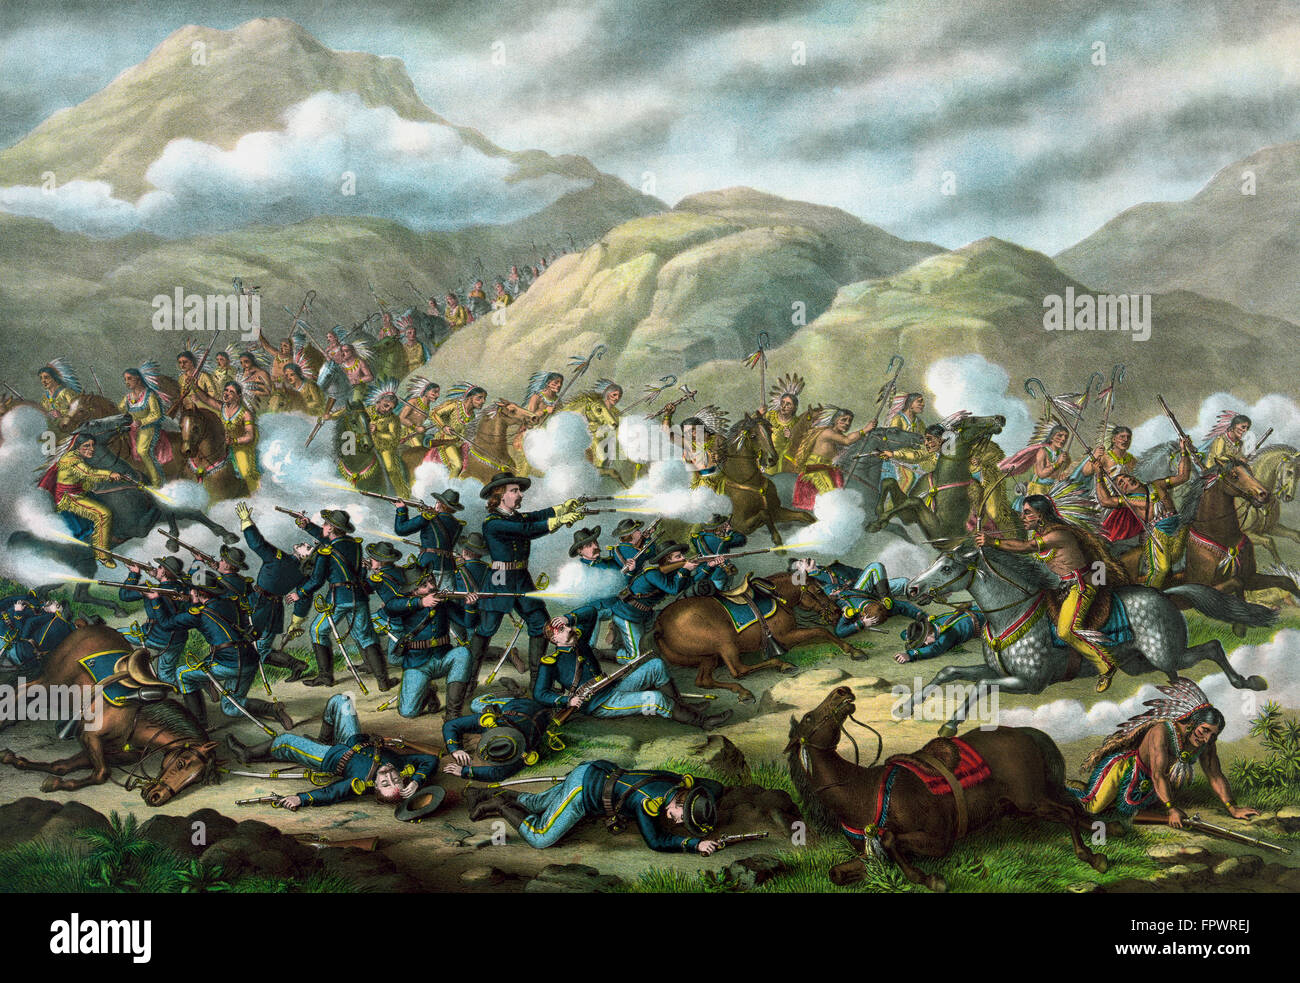 Militaire Vintage print avec la bataille de Little Bighorn, également connu sous le nom de Custer's Last Stand. Banque D'Images